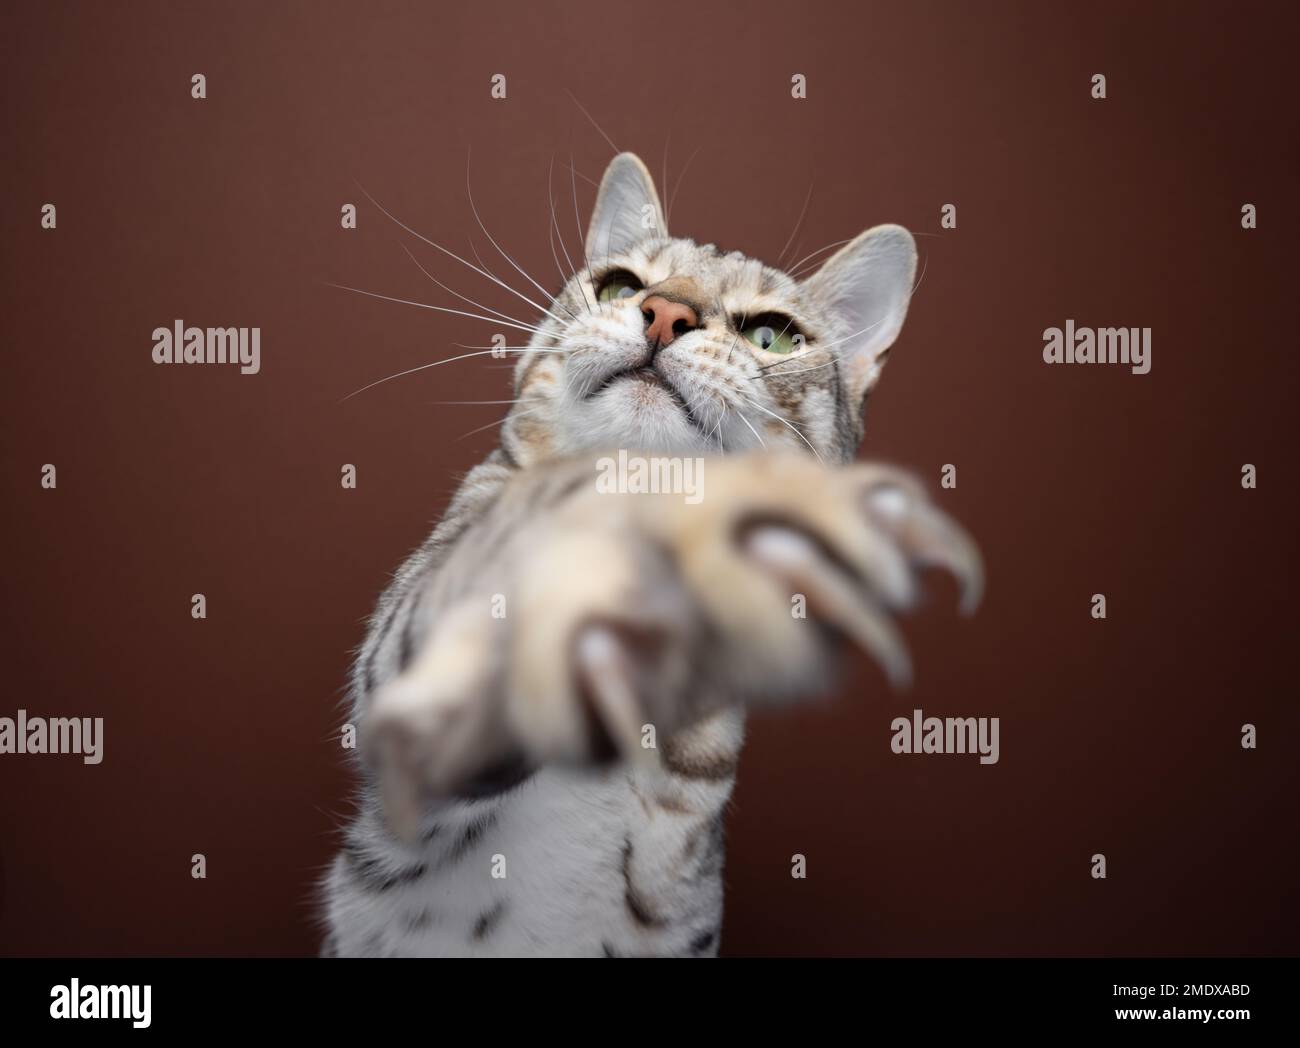 Primo piano di un gatto bengala che gioca raggiungendo la zampa con artigli affilati verso la telecamera. Lo sfondo è di colore marrone Foto Stock